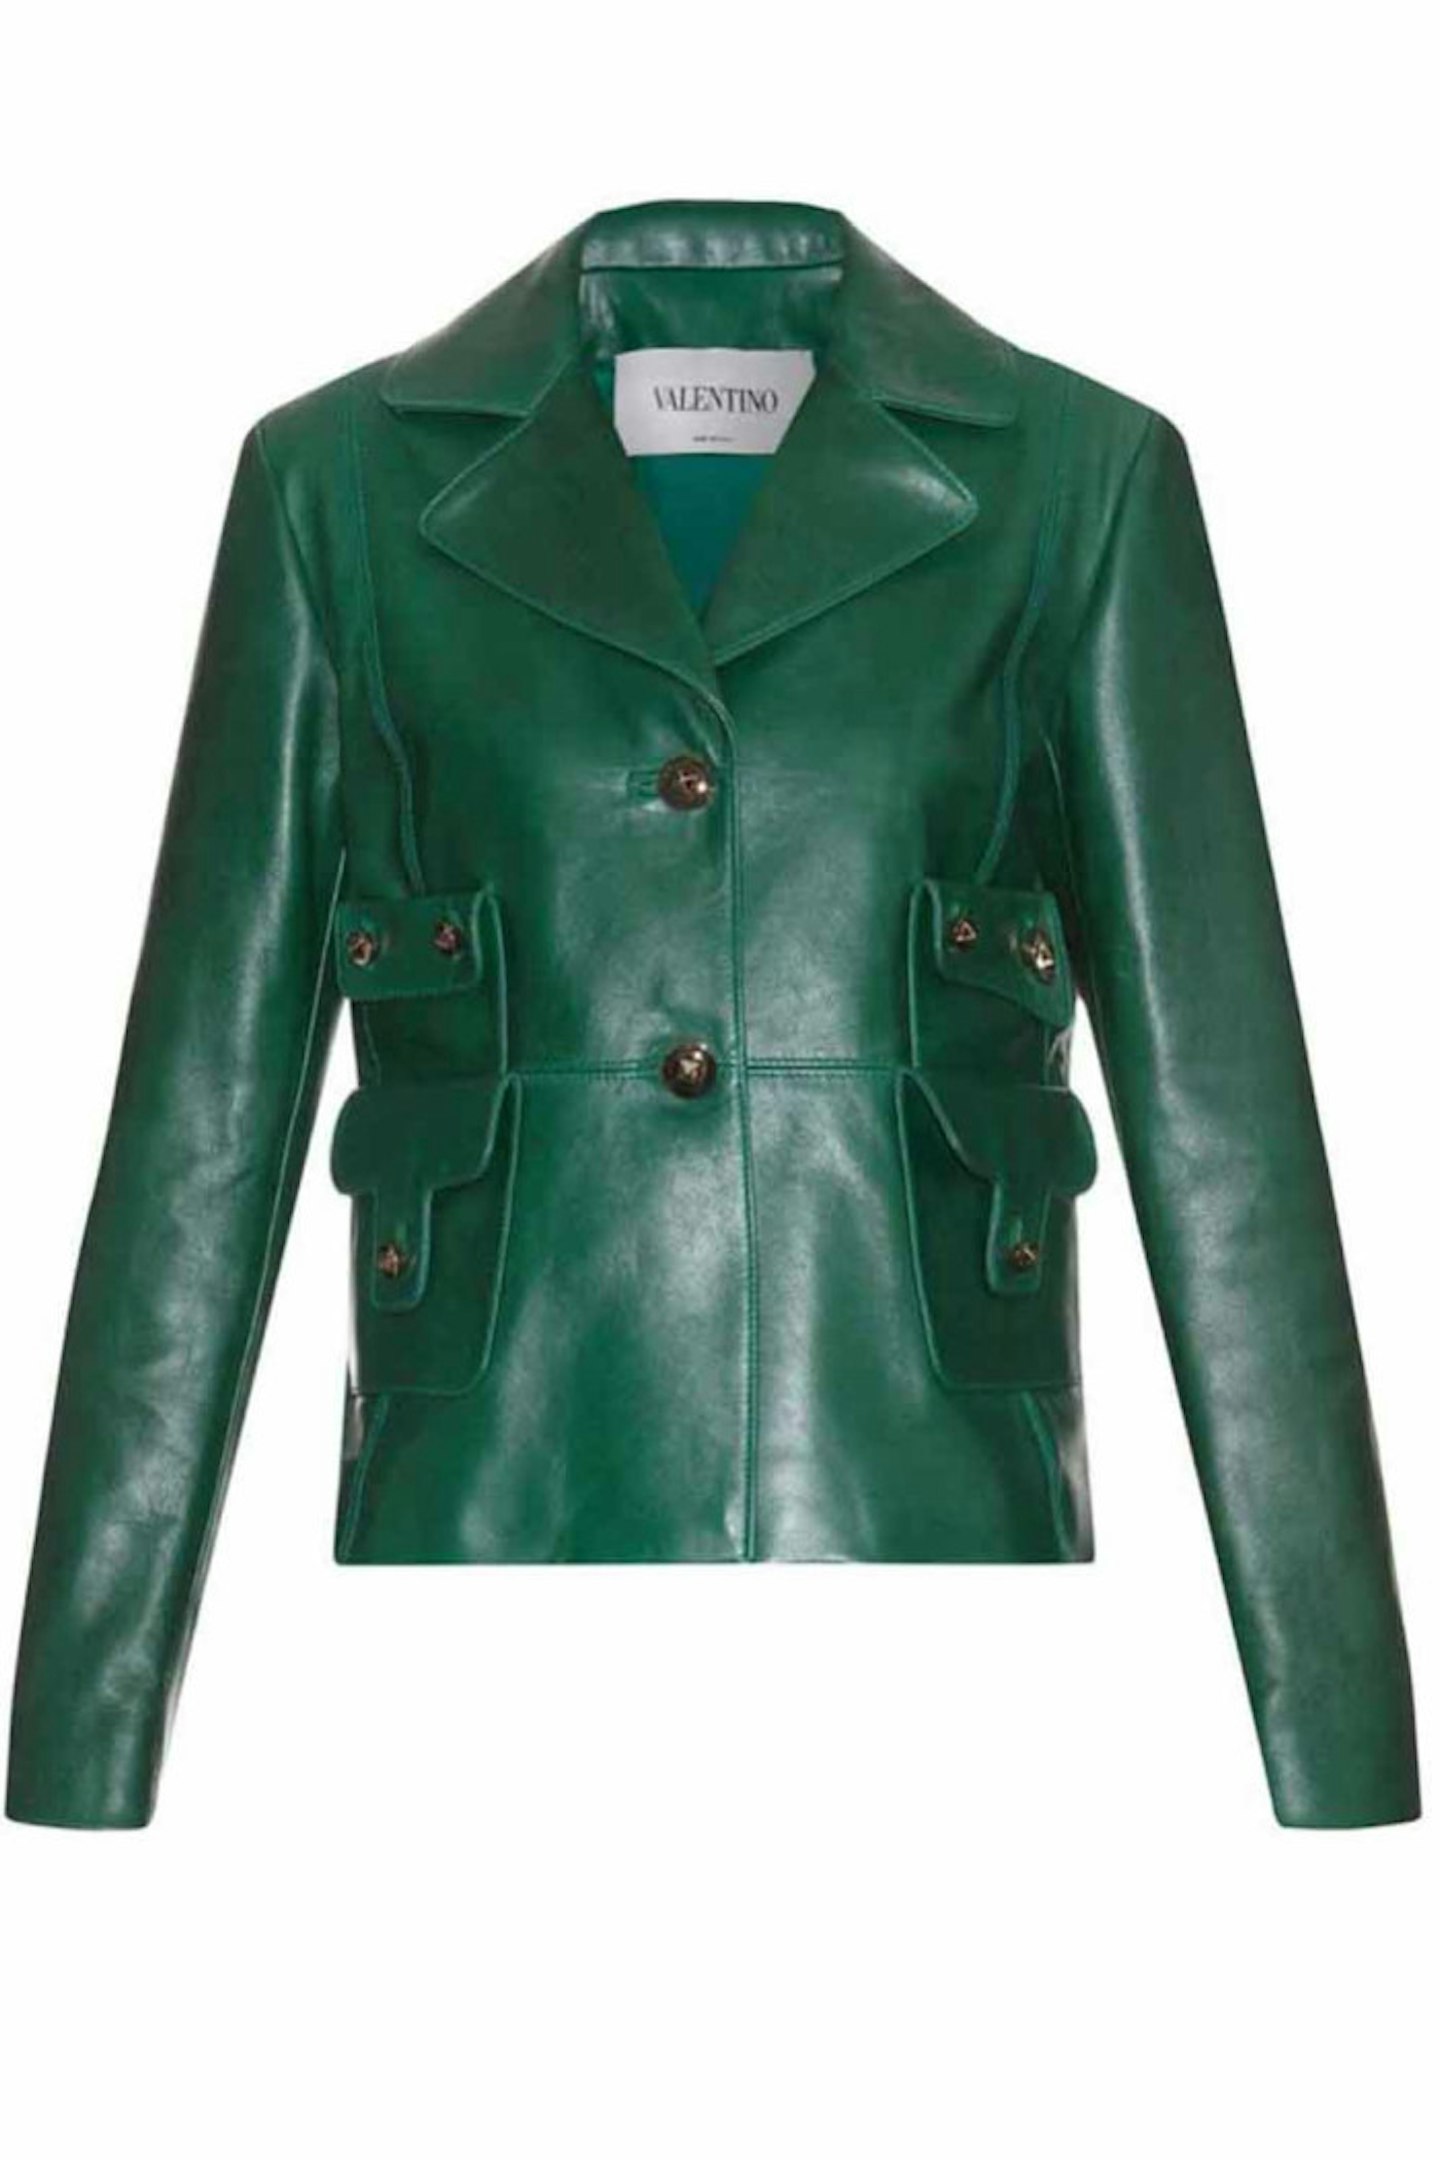 Valentino Leather Jacket, £3,465.00